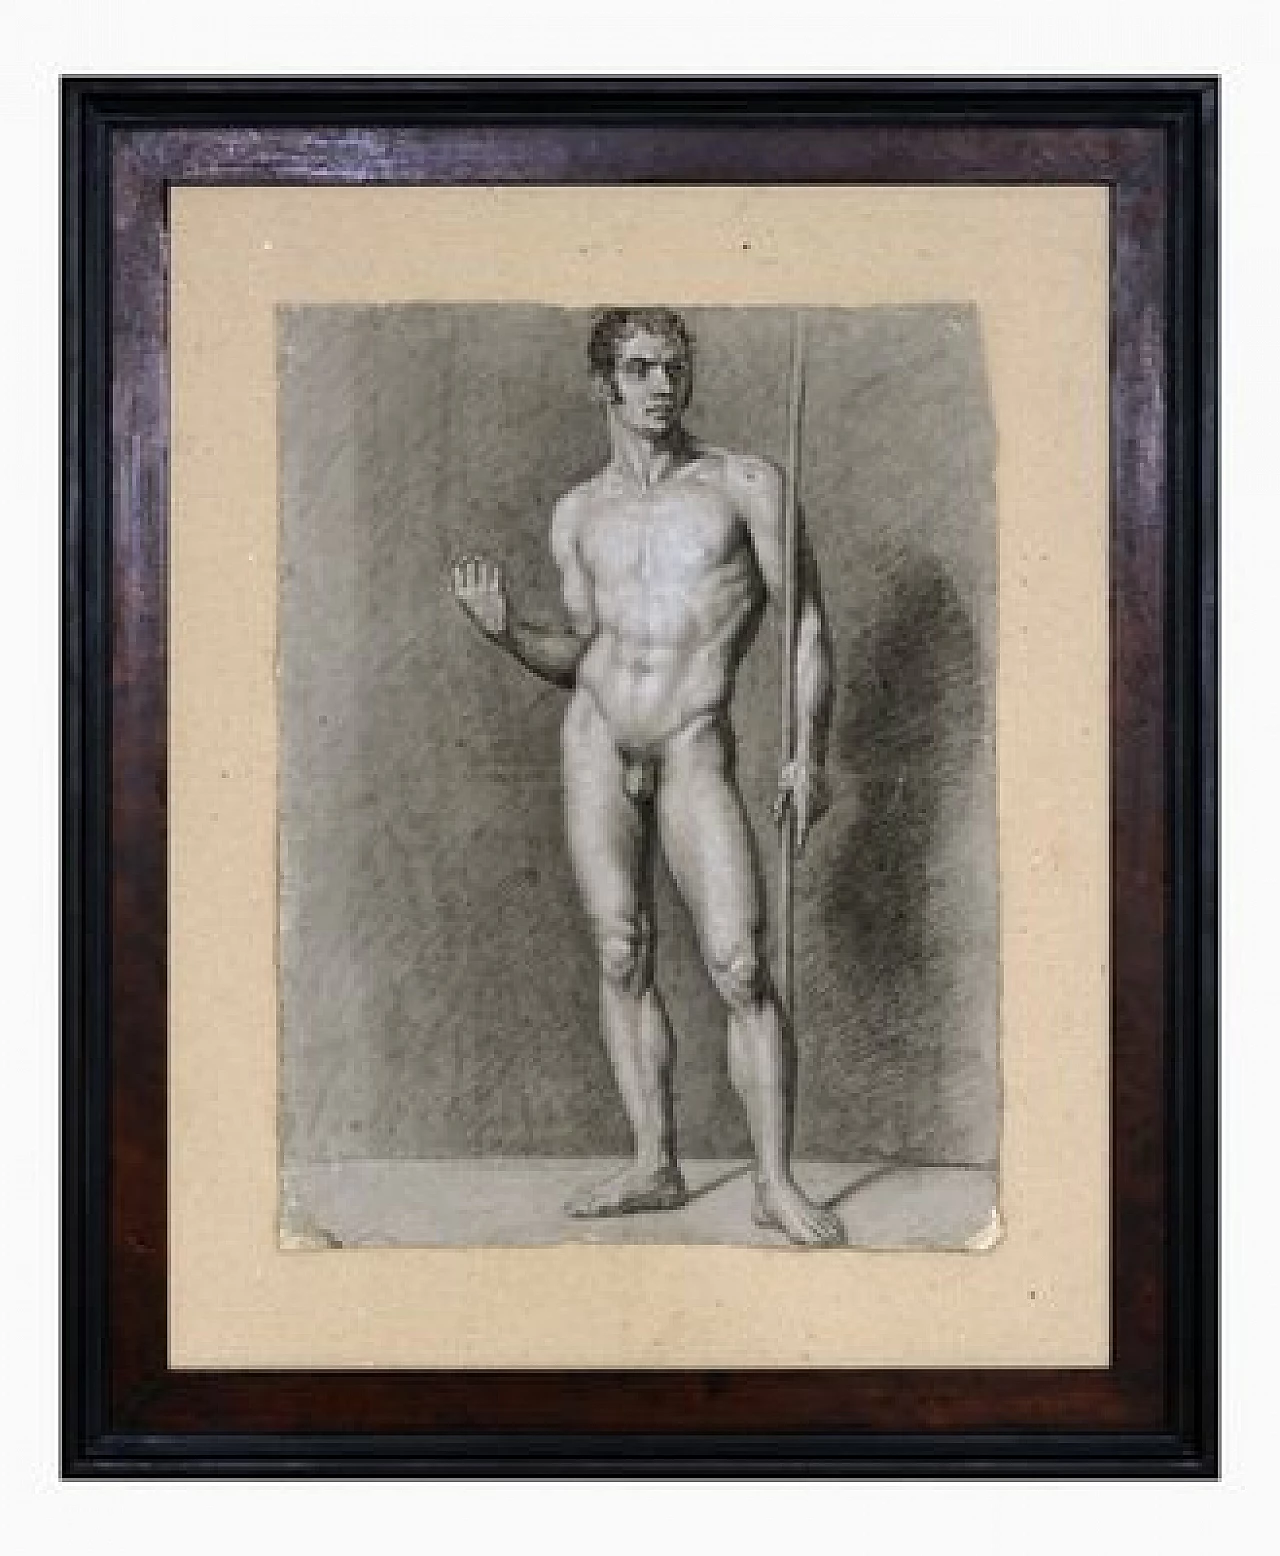 Studio di nudo maschile, carboncino e matita su carta con cornice, inizio '800 1